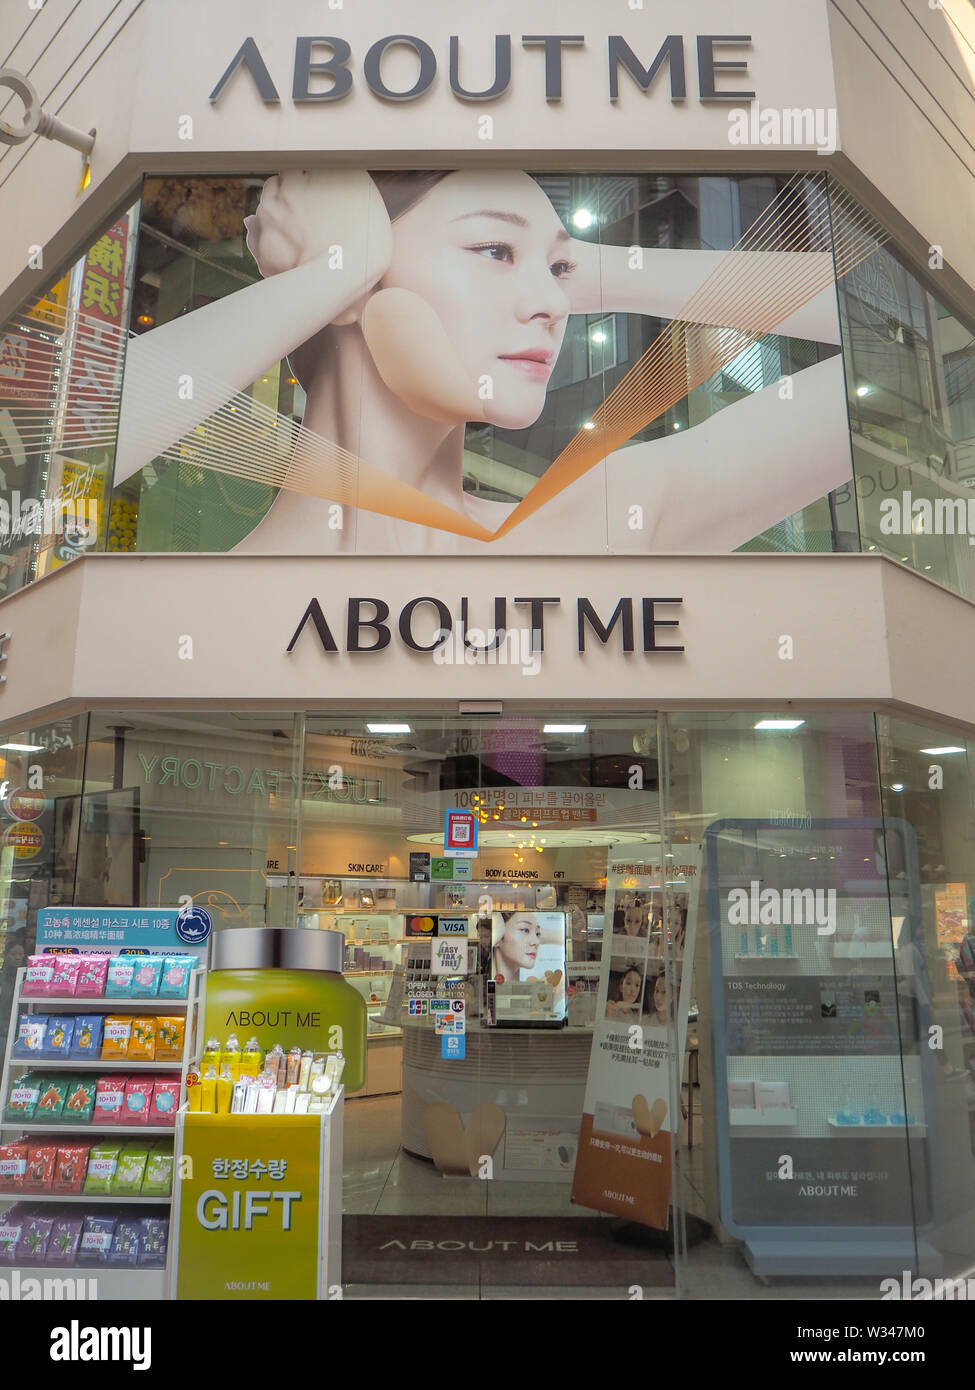 März 2019 - Seoul, Südkorea: Speichern der Südkoreanischen Hautpflegemarke Über mich, von Samyang Gruppe, in Myeongdong Shopping District Besitz Stockfoto